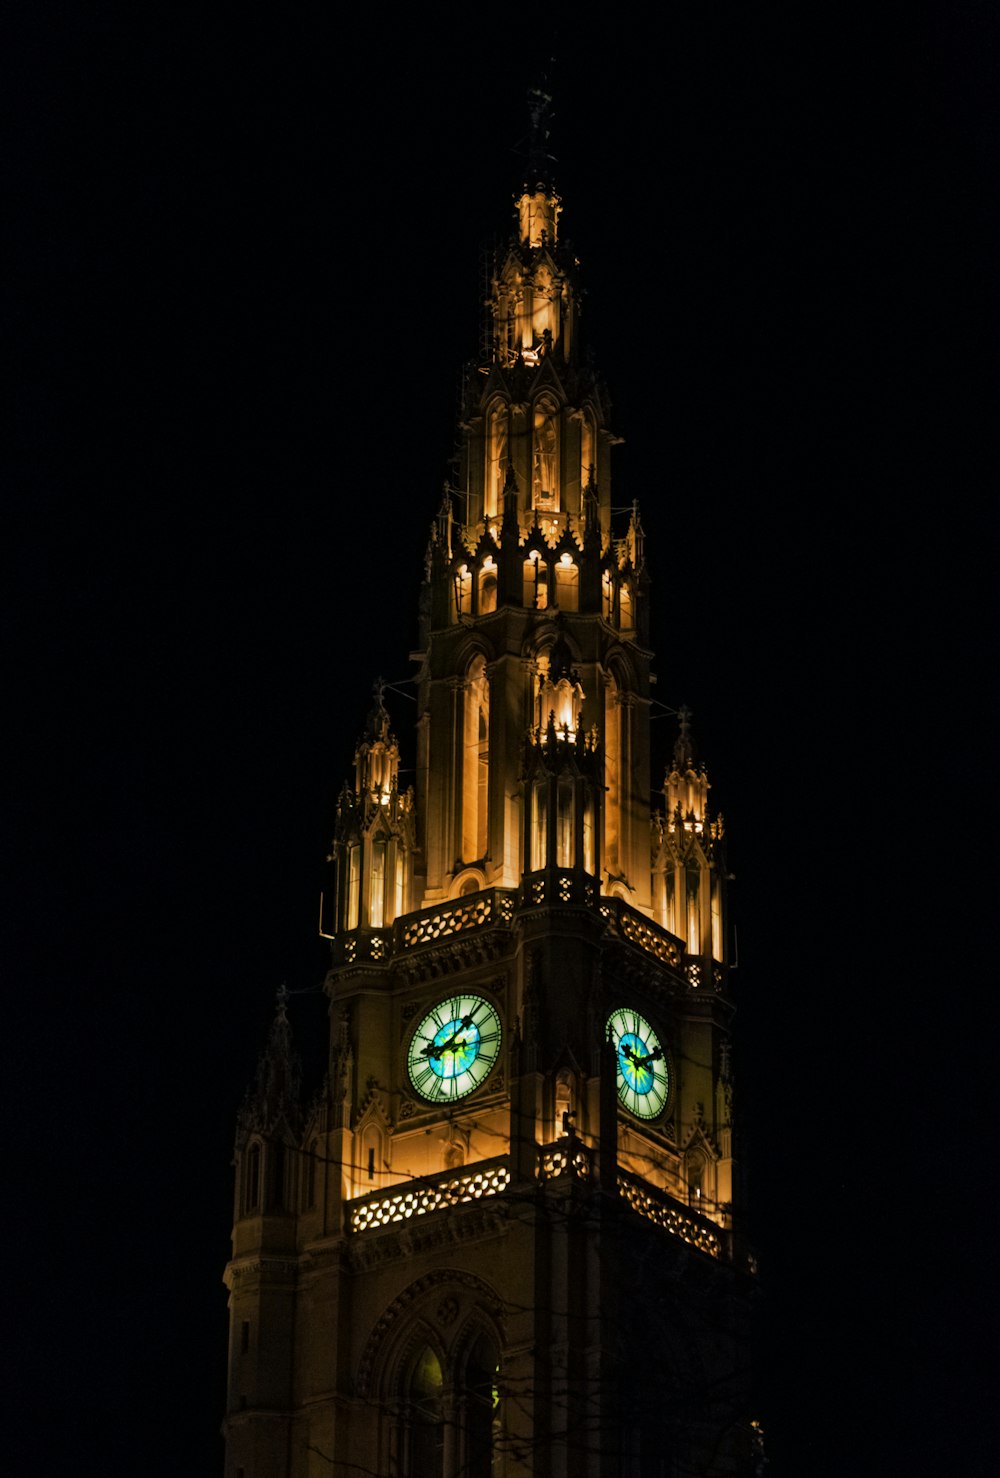 Vista da torre do relógio à noite